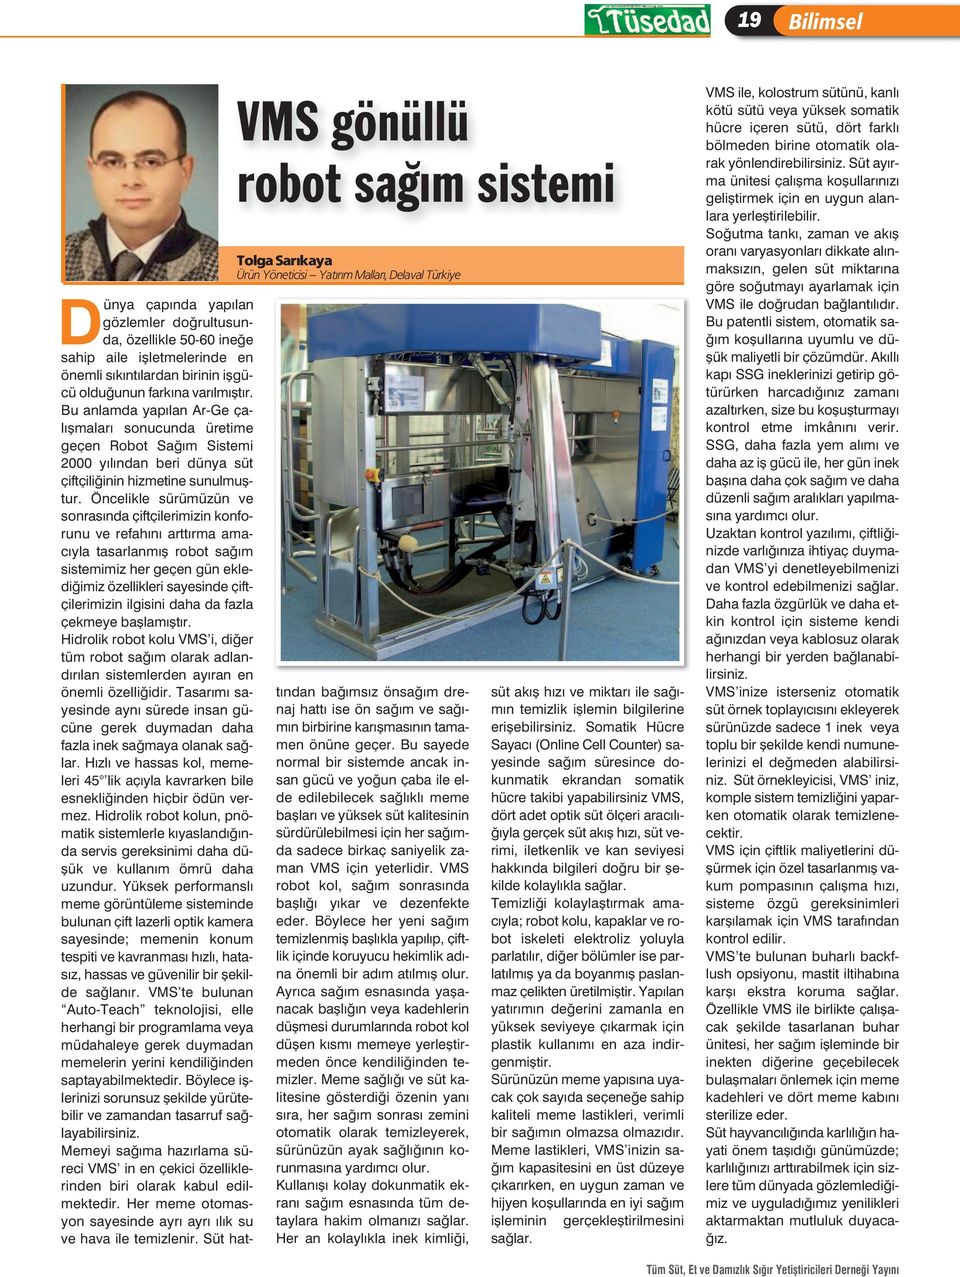 Bu anlamda yapılan Ar-Ge çalışmaları sonucunda üretime geçen Robot Sağım Sistemi 2000 yılından beri dünya süt çiftçiliğinin hizmetine sunulmuştur.